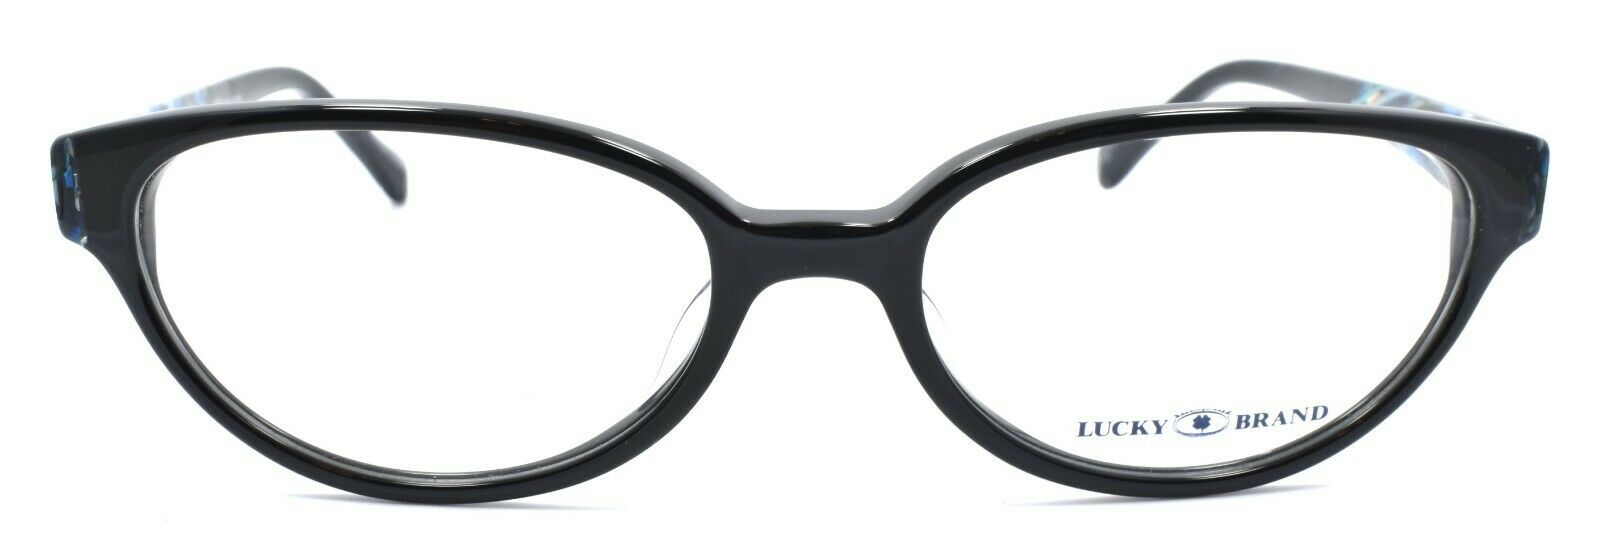 2-LUCKY BRAND Sunrise UF Women's Eyeglasses Frames 52-17-140 Black + CASE-751286256604-IKSpecs